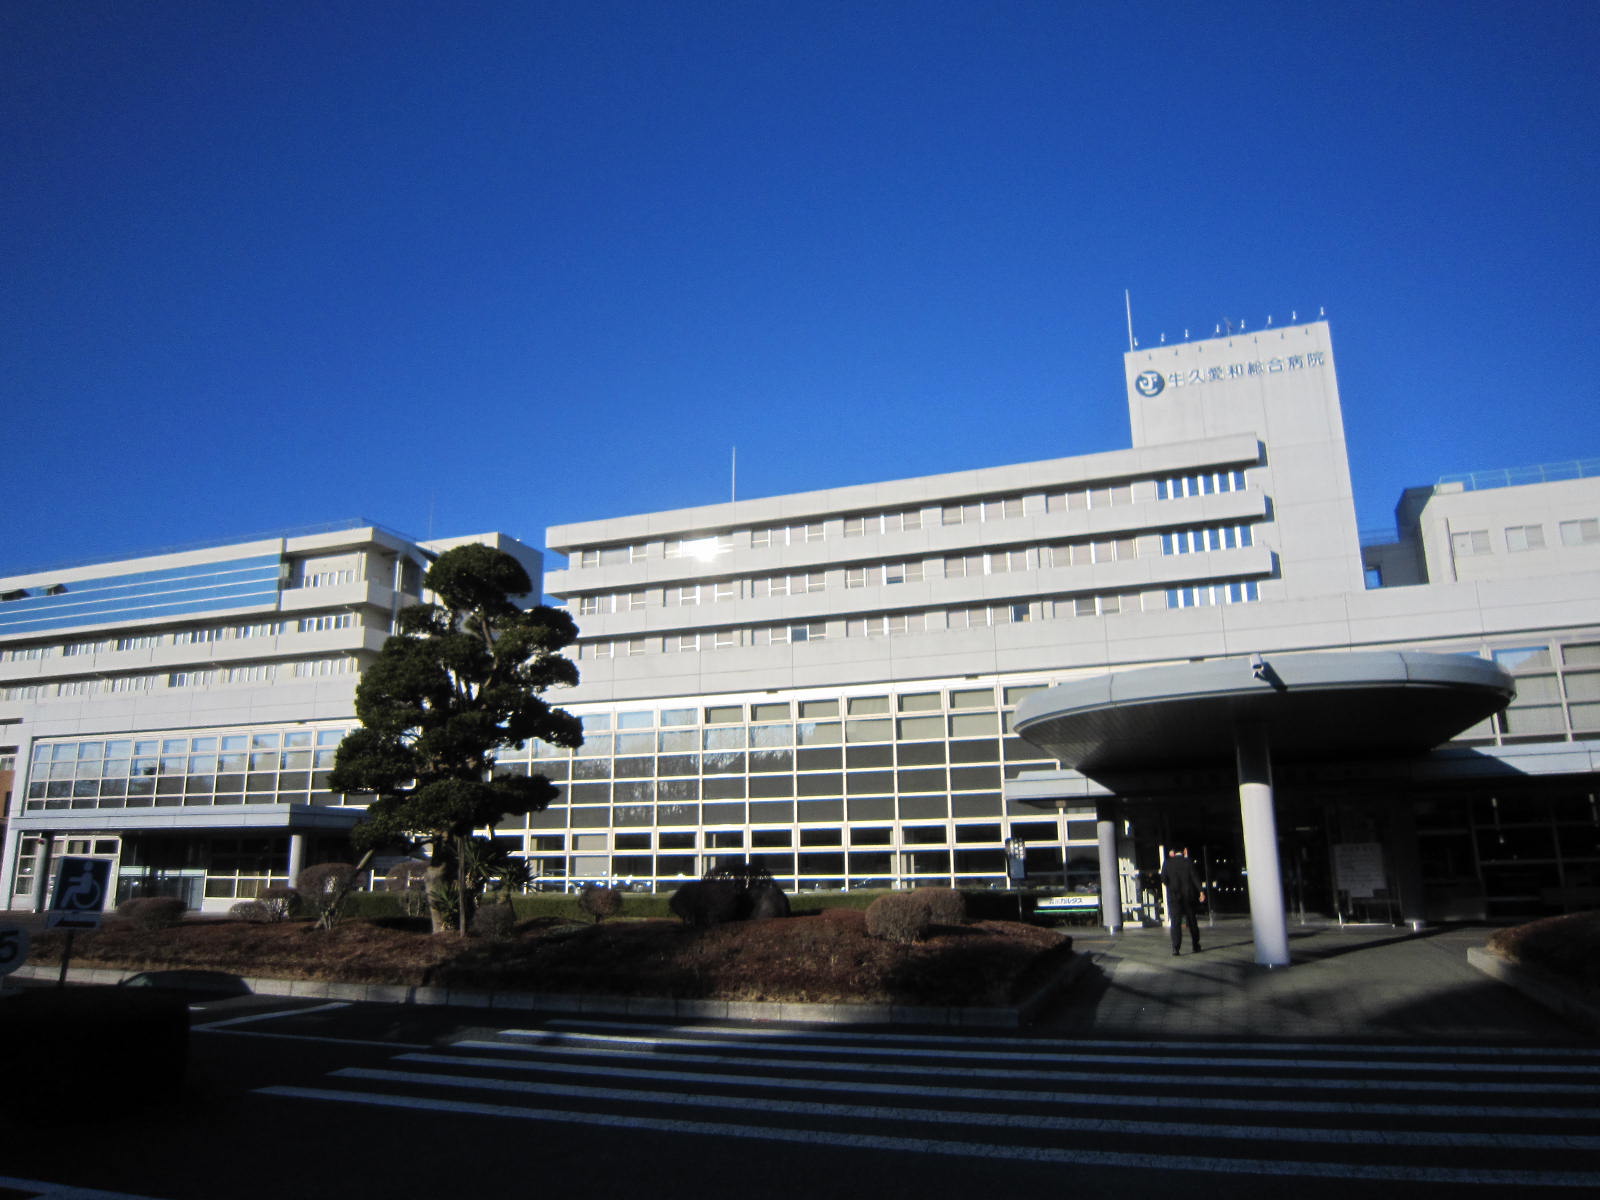 Hospital. Ushikuaiwasogobyoin until the (hospital) 833m